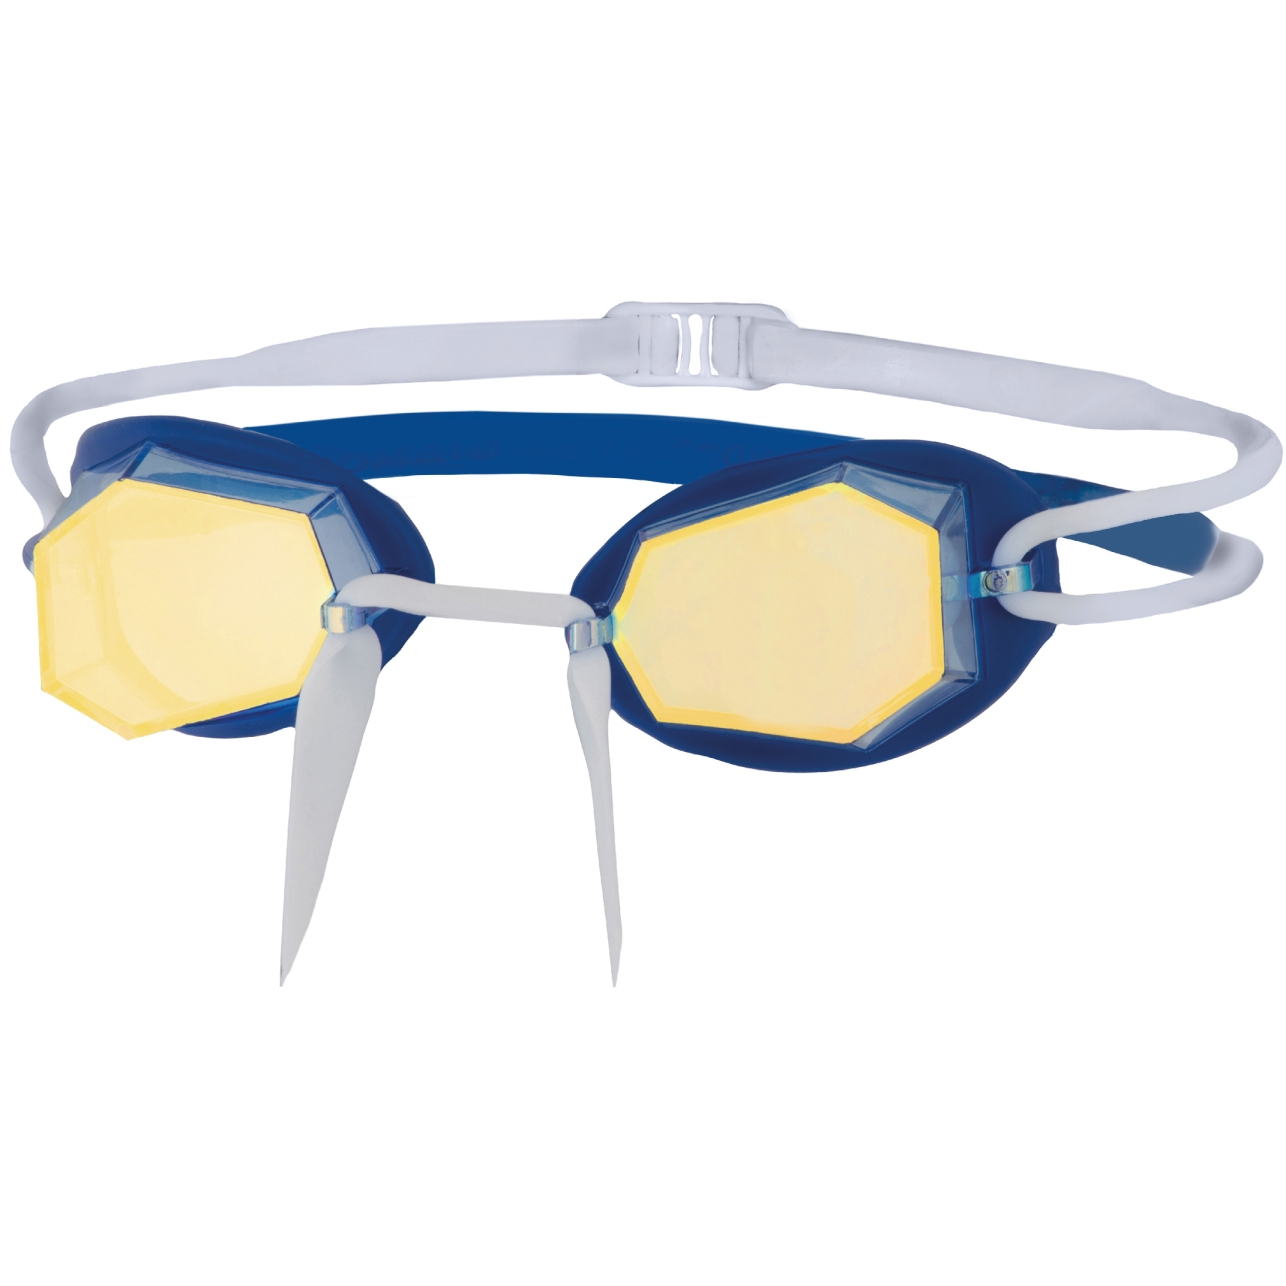 Picture of Zoggs Diamond Mirror Swim Goggles - Blue/White/Mirrored Gold